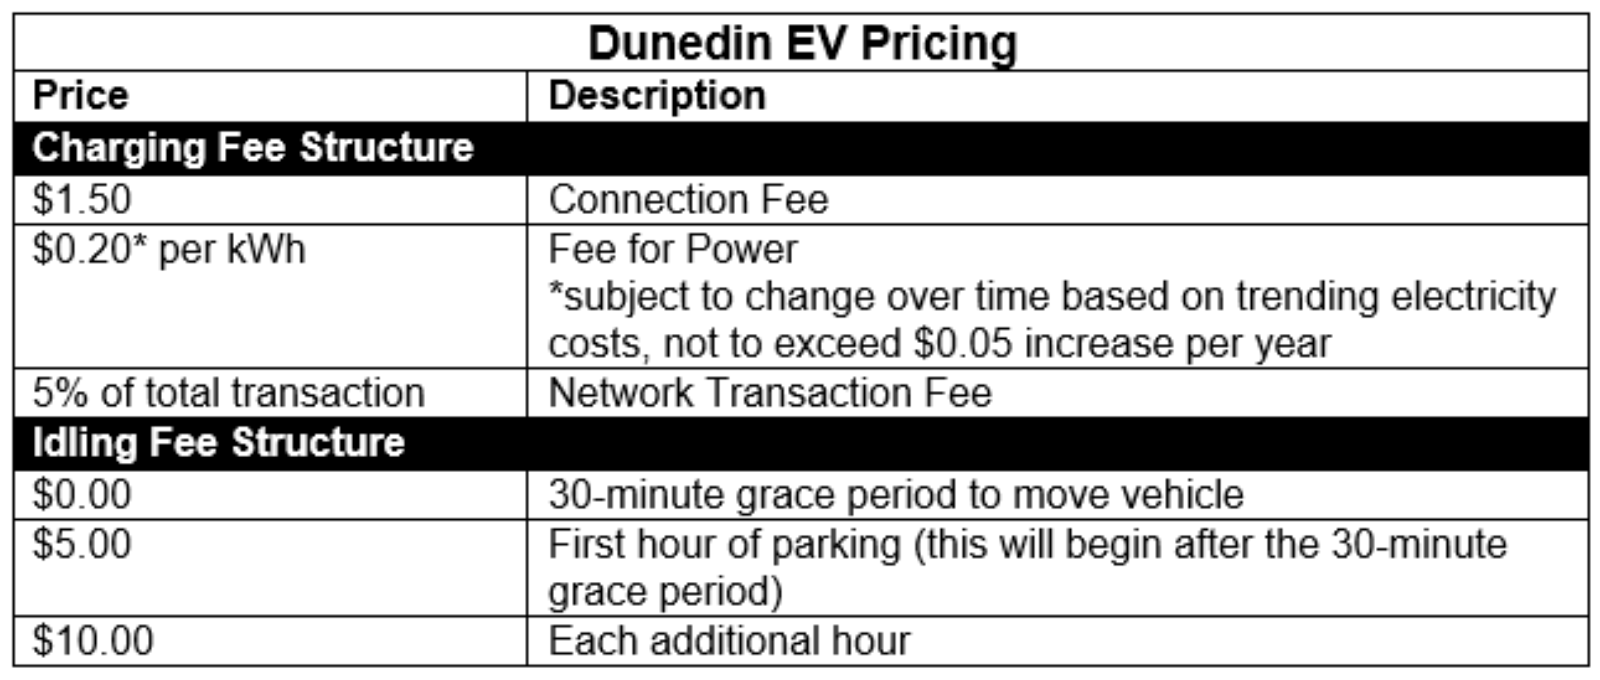 Duneidn EV pricing.png